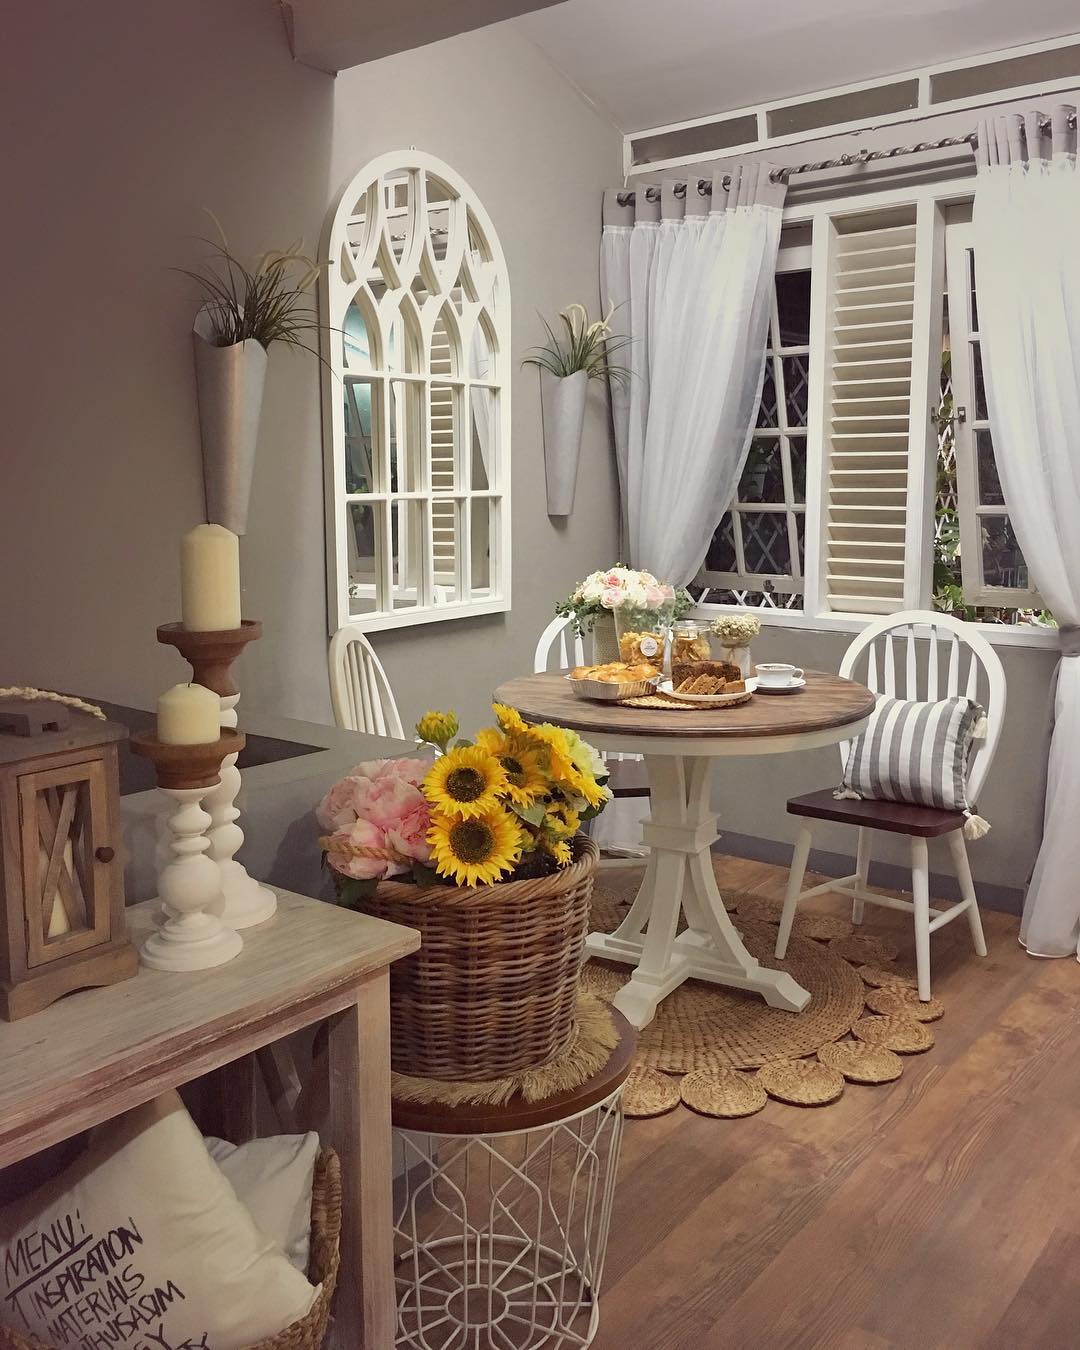 Desain Interior Ruang Makan Minimalis Tema Vintage Dengan Furnitur Klasik Inspirasi Desain Rumah Terkini